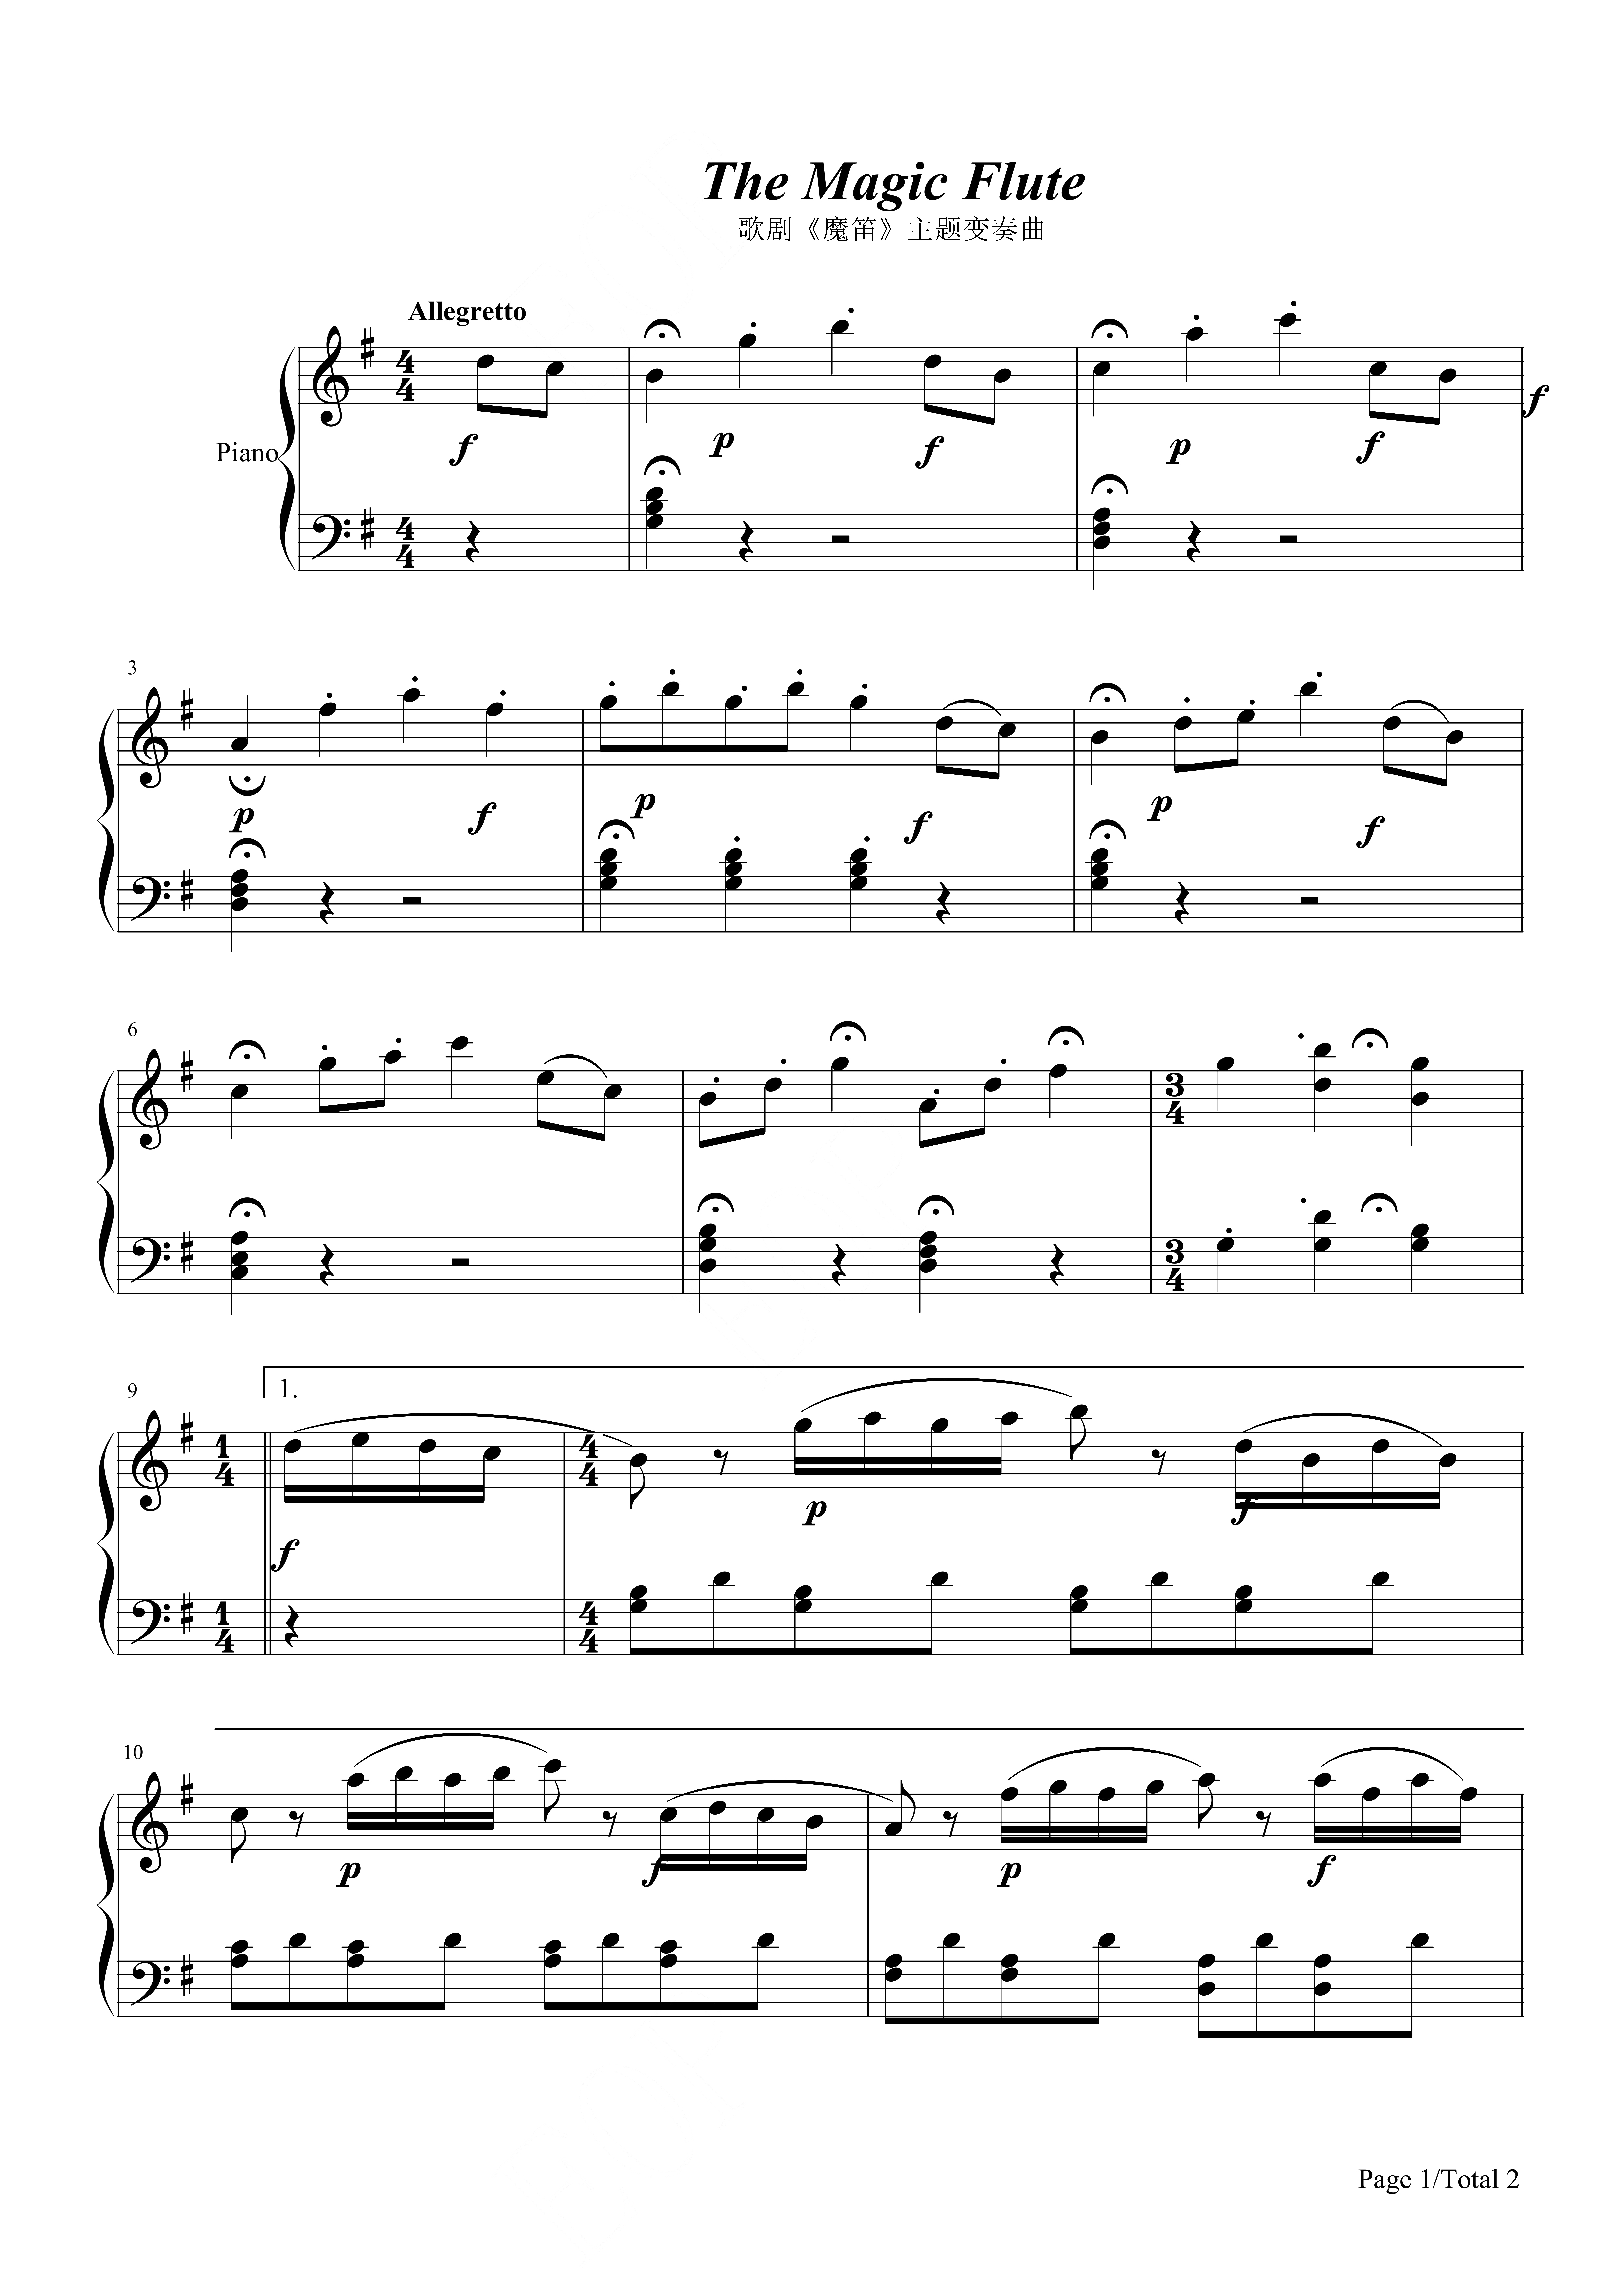 《魔笛》主题变奏曲钢琴谱-莫扎特-歌剧-琴艺谱